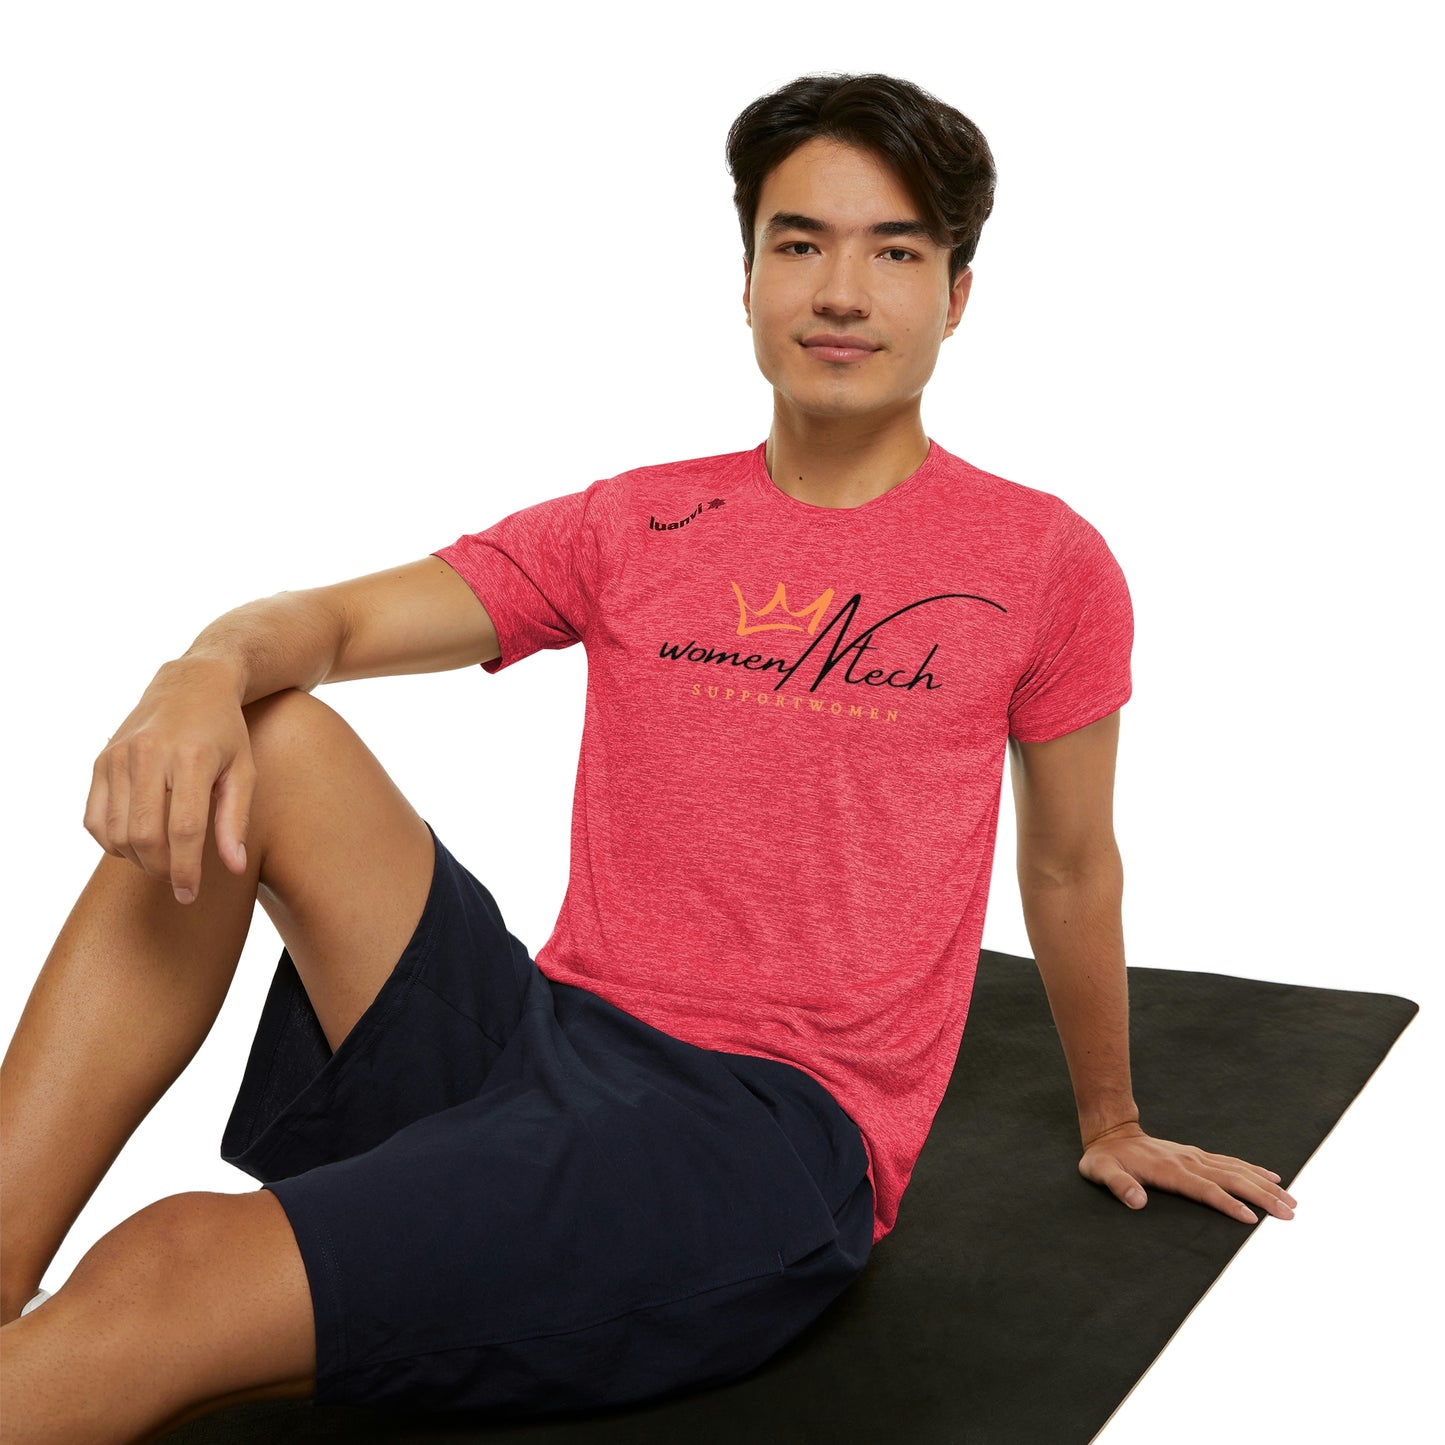 Best High Quality Men's Sports T-shirt - Buy From WomenNtech